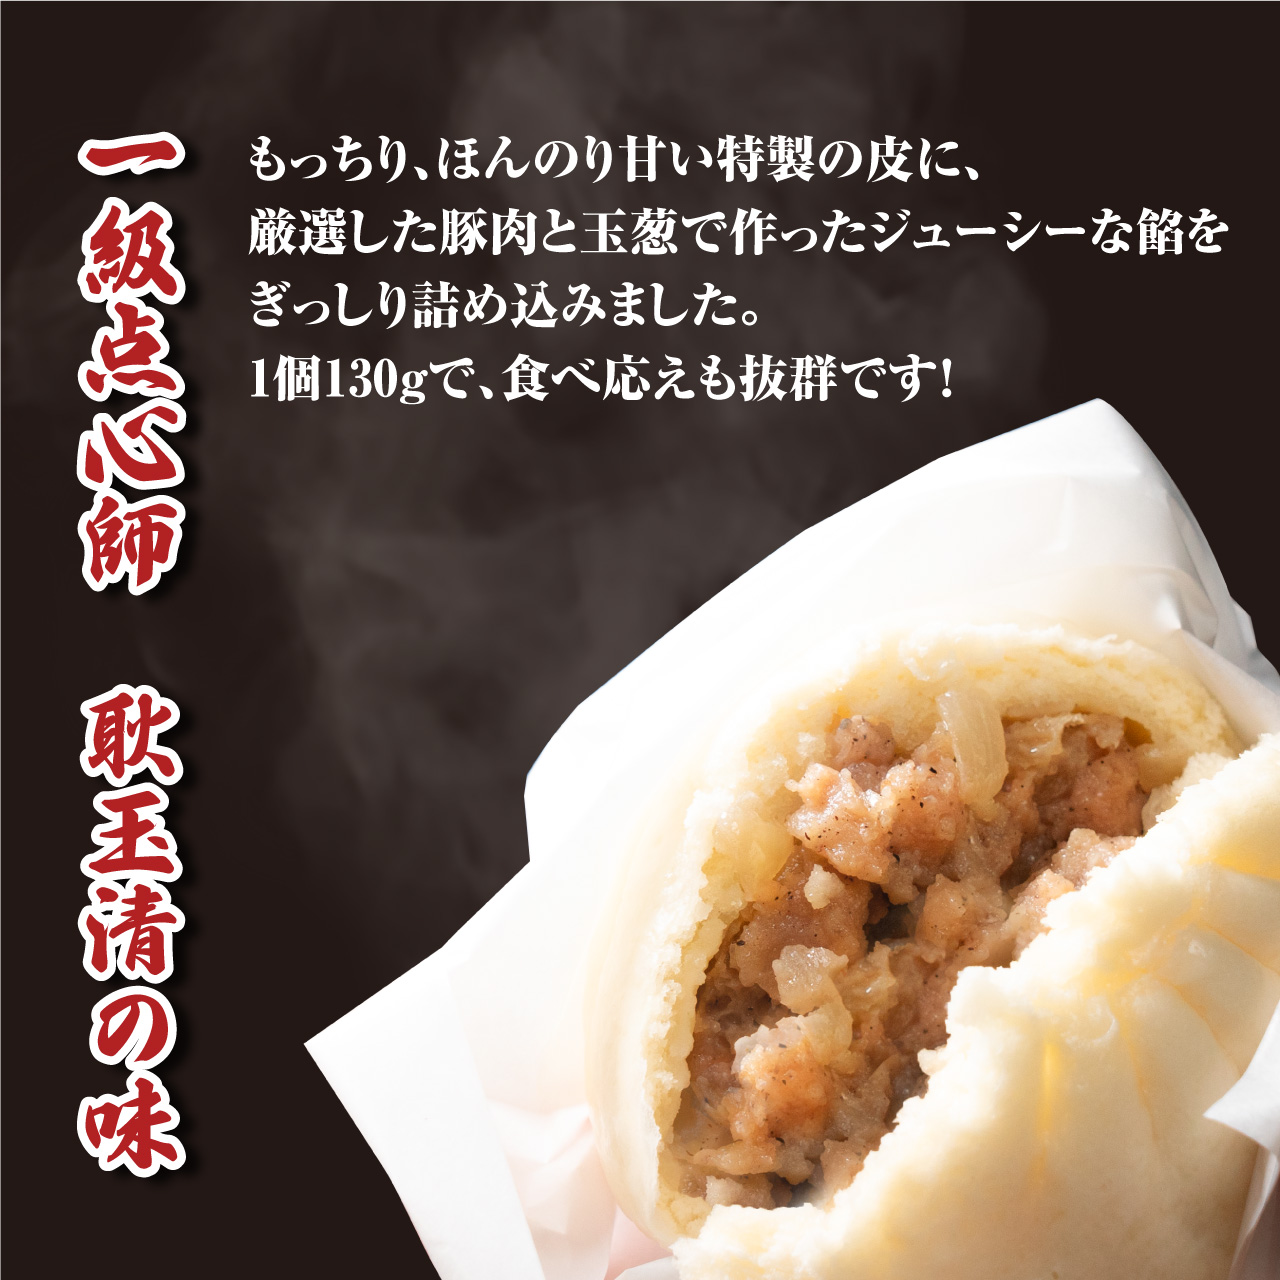 大阪ふくちぁん餃子のぶたまんは1個130gの大粒で食べ応えバツグン